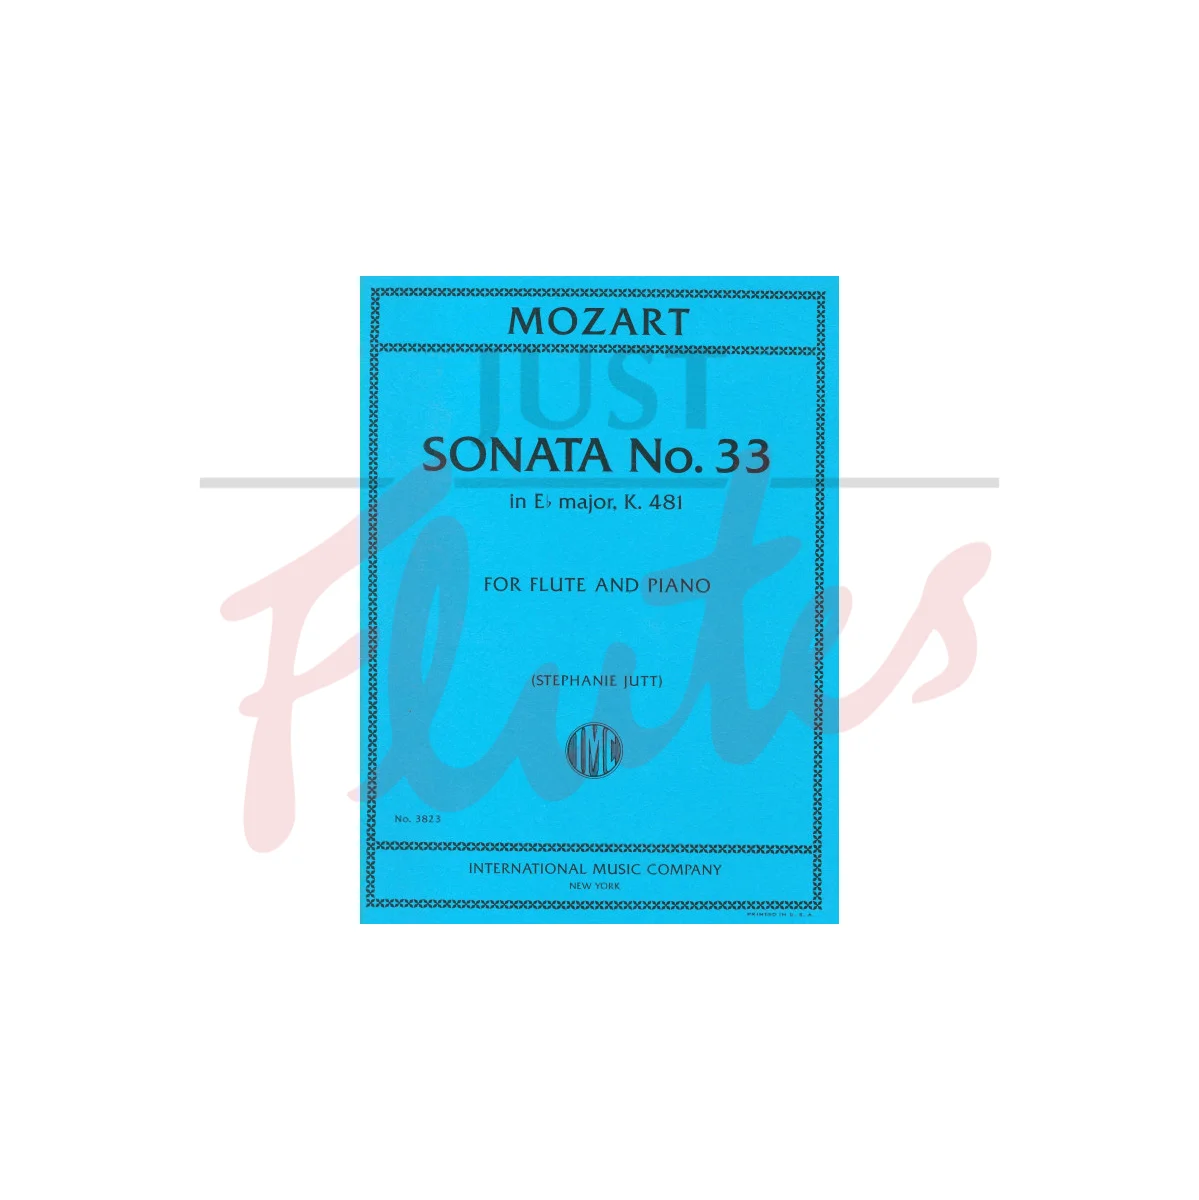 Sonata No. 33 in E flat major for Flute and Piano